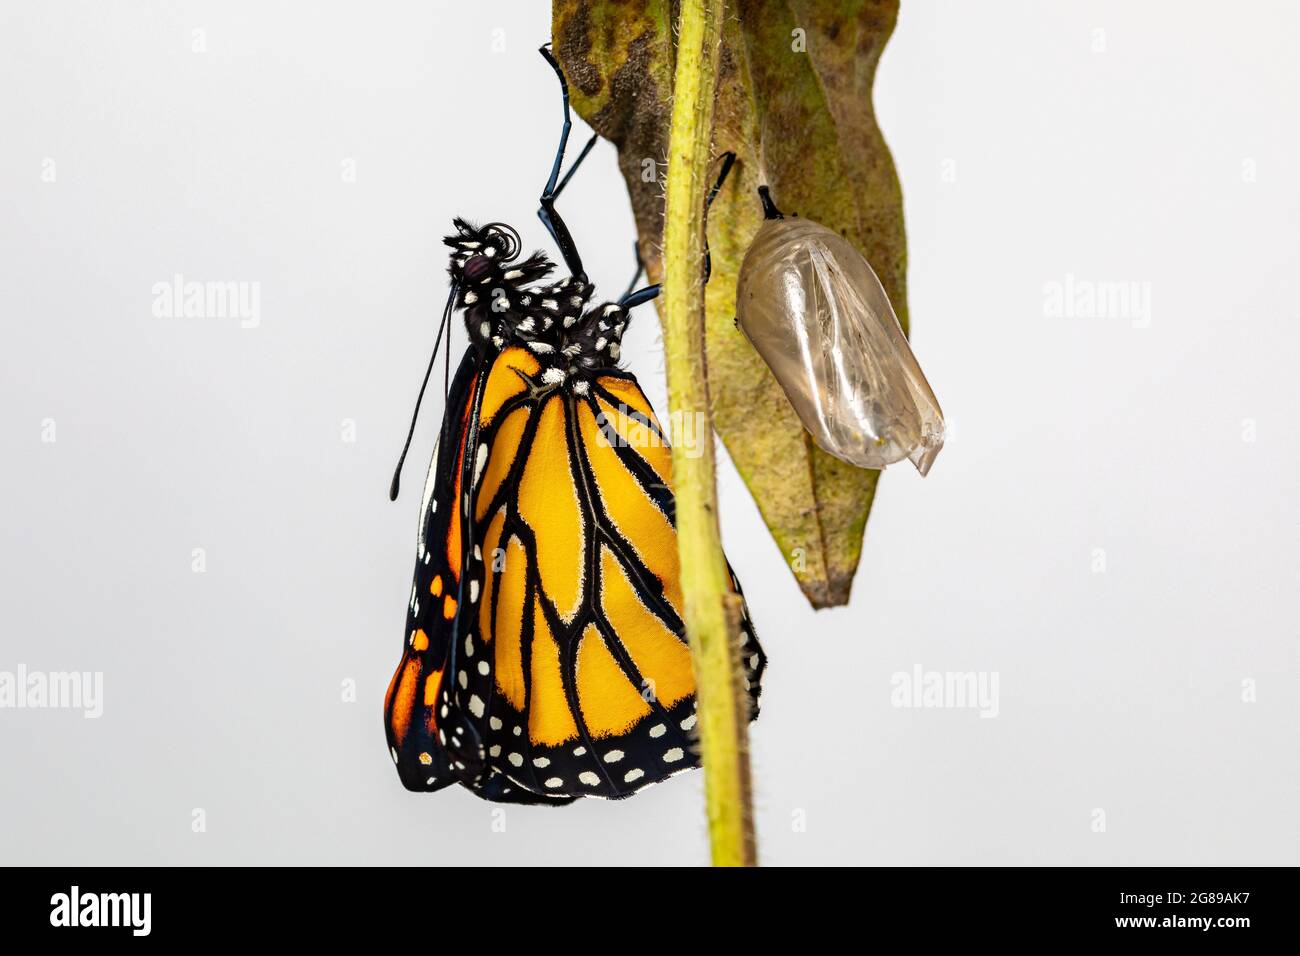 La farfalla monarca è appena emersa dal crisalide completando la metamorfosi. Concetto di conservazione delle farfalle, ciclo di vita, conservazione dell'habitat, e b Foto Stock